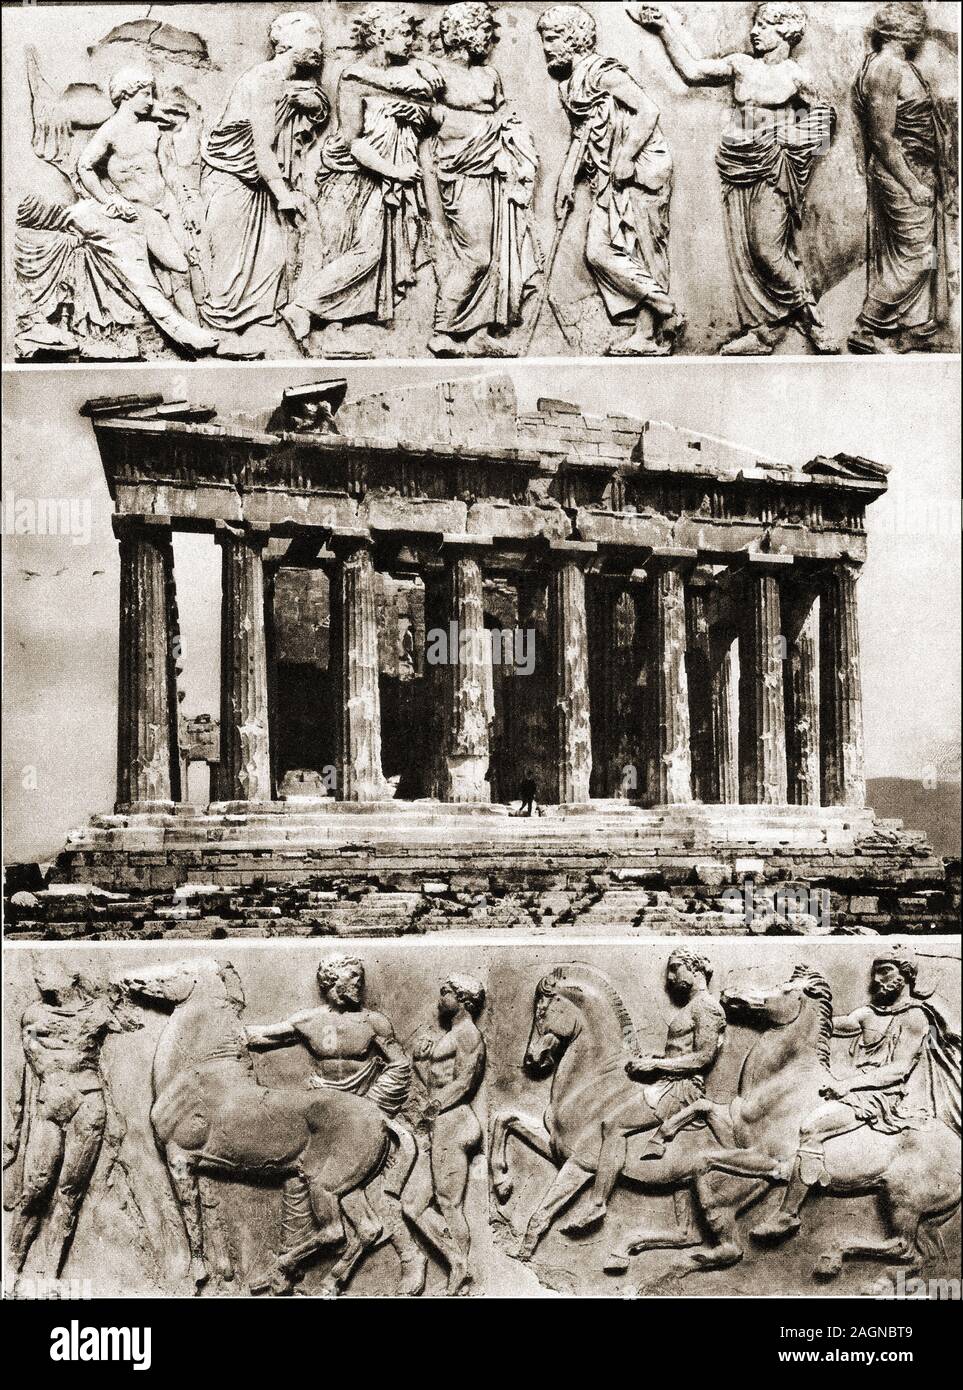 Una fotografía de finales del siglo XIX el Partenón, Atenas, y parte de sus frisos en su estado puro. Los frisos se celebran ahora en Gran Bretaña en la "colección de los Mármoles de Elgin. Foto de stock